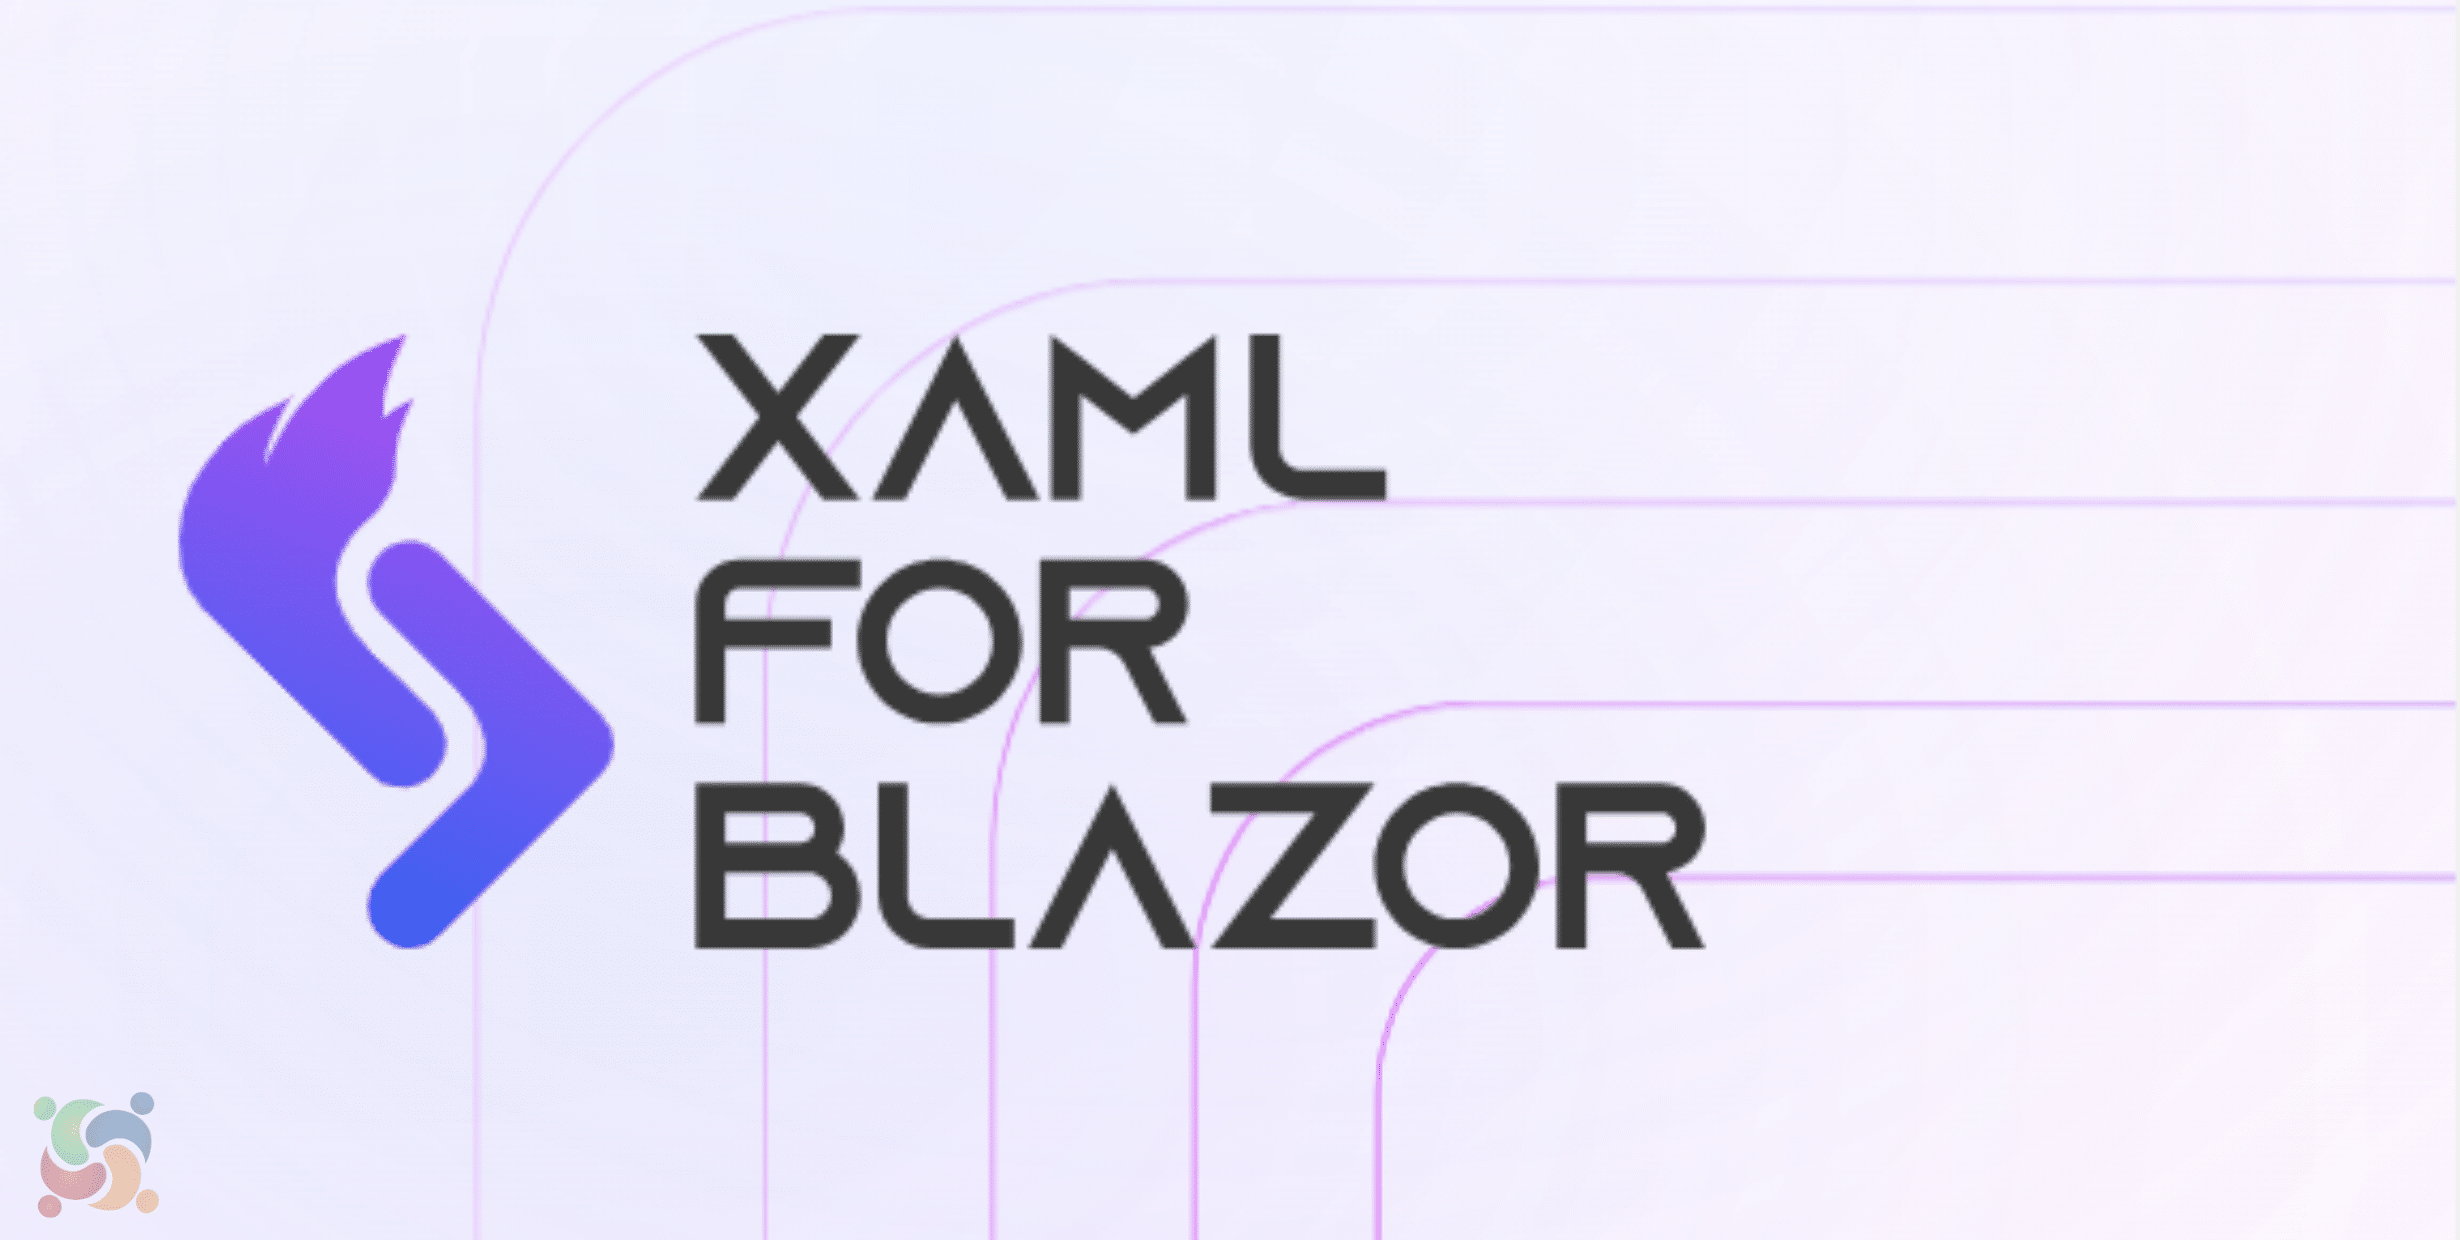 OpenSilver substituiu o Silverlight e apresenta o XAML para Blazor